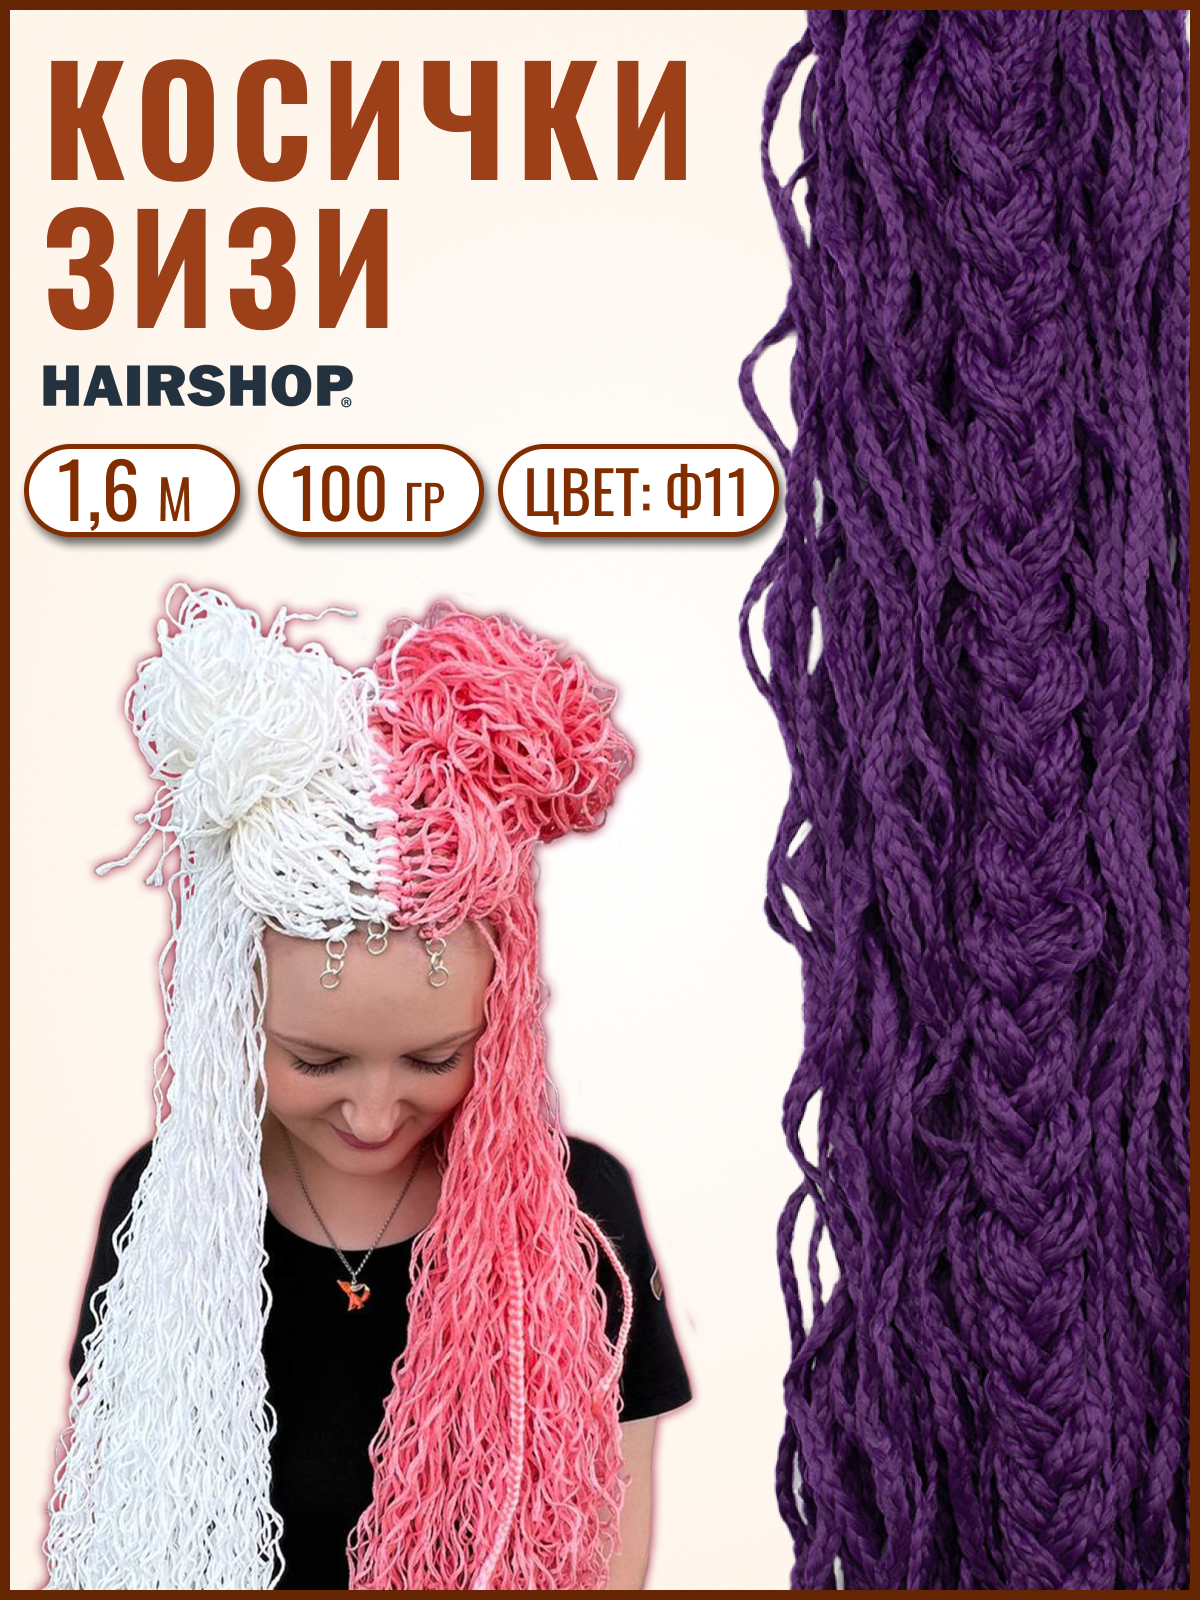 Косички Hairshop Зизи волна Ф11 Фиолетовый